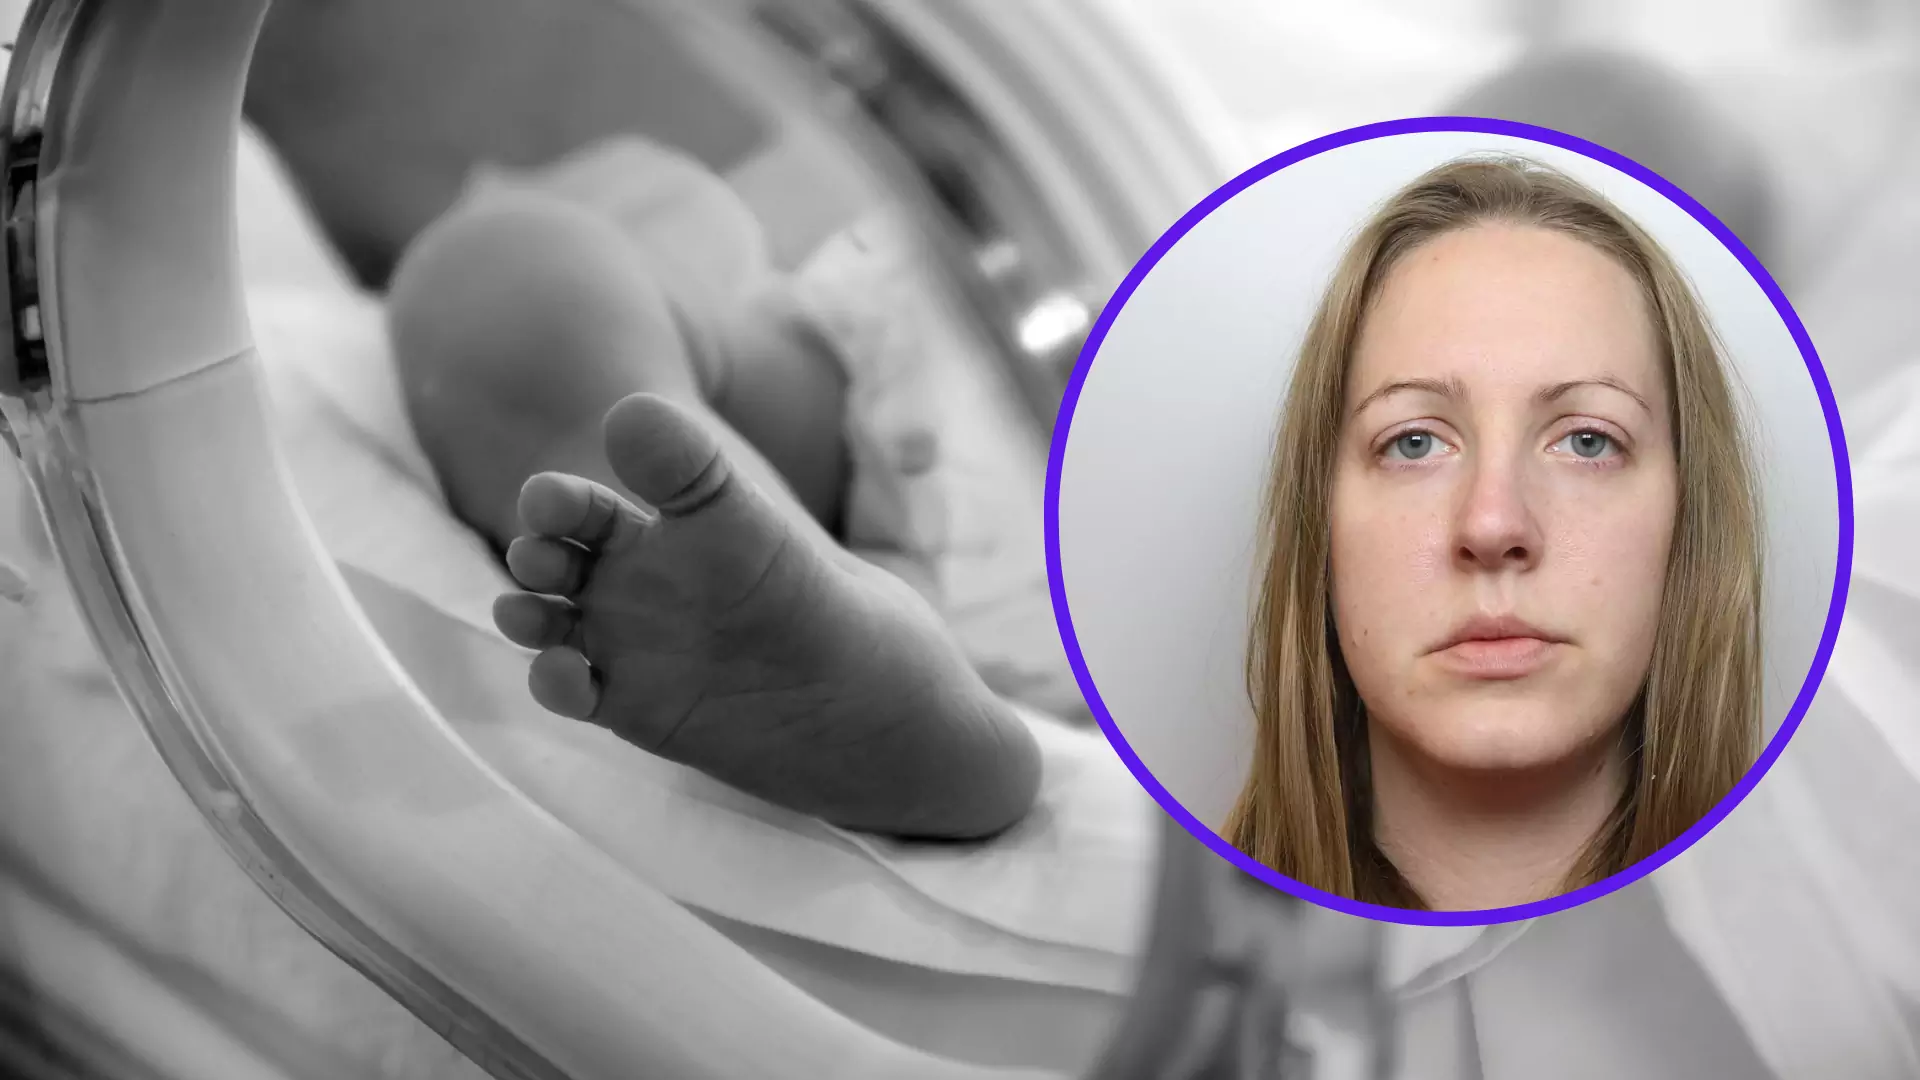 Pielęgniarka mordowała noworodki. "Wyrachowana i bezduszna zabójczyni"